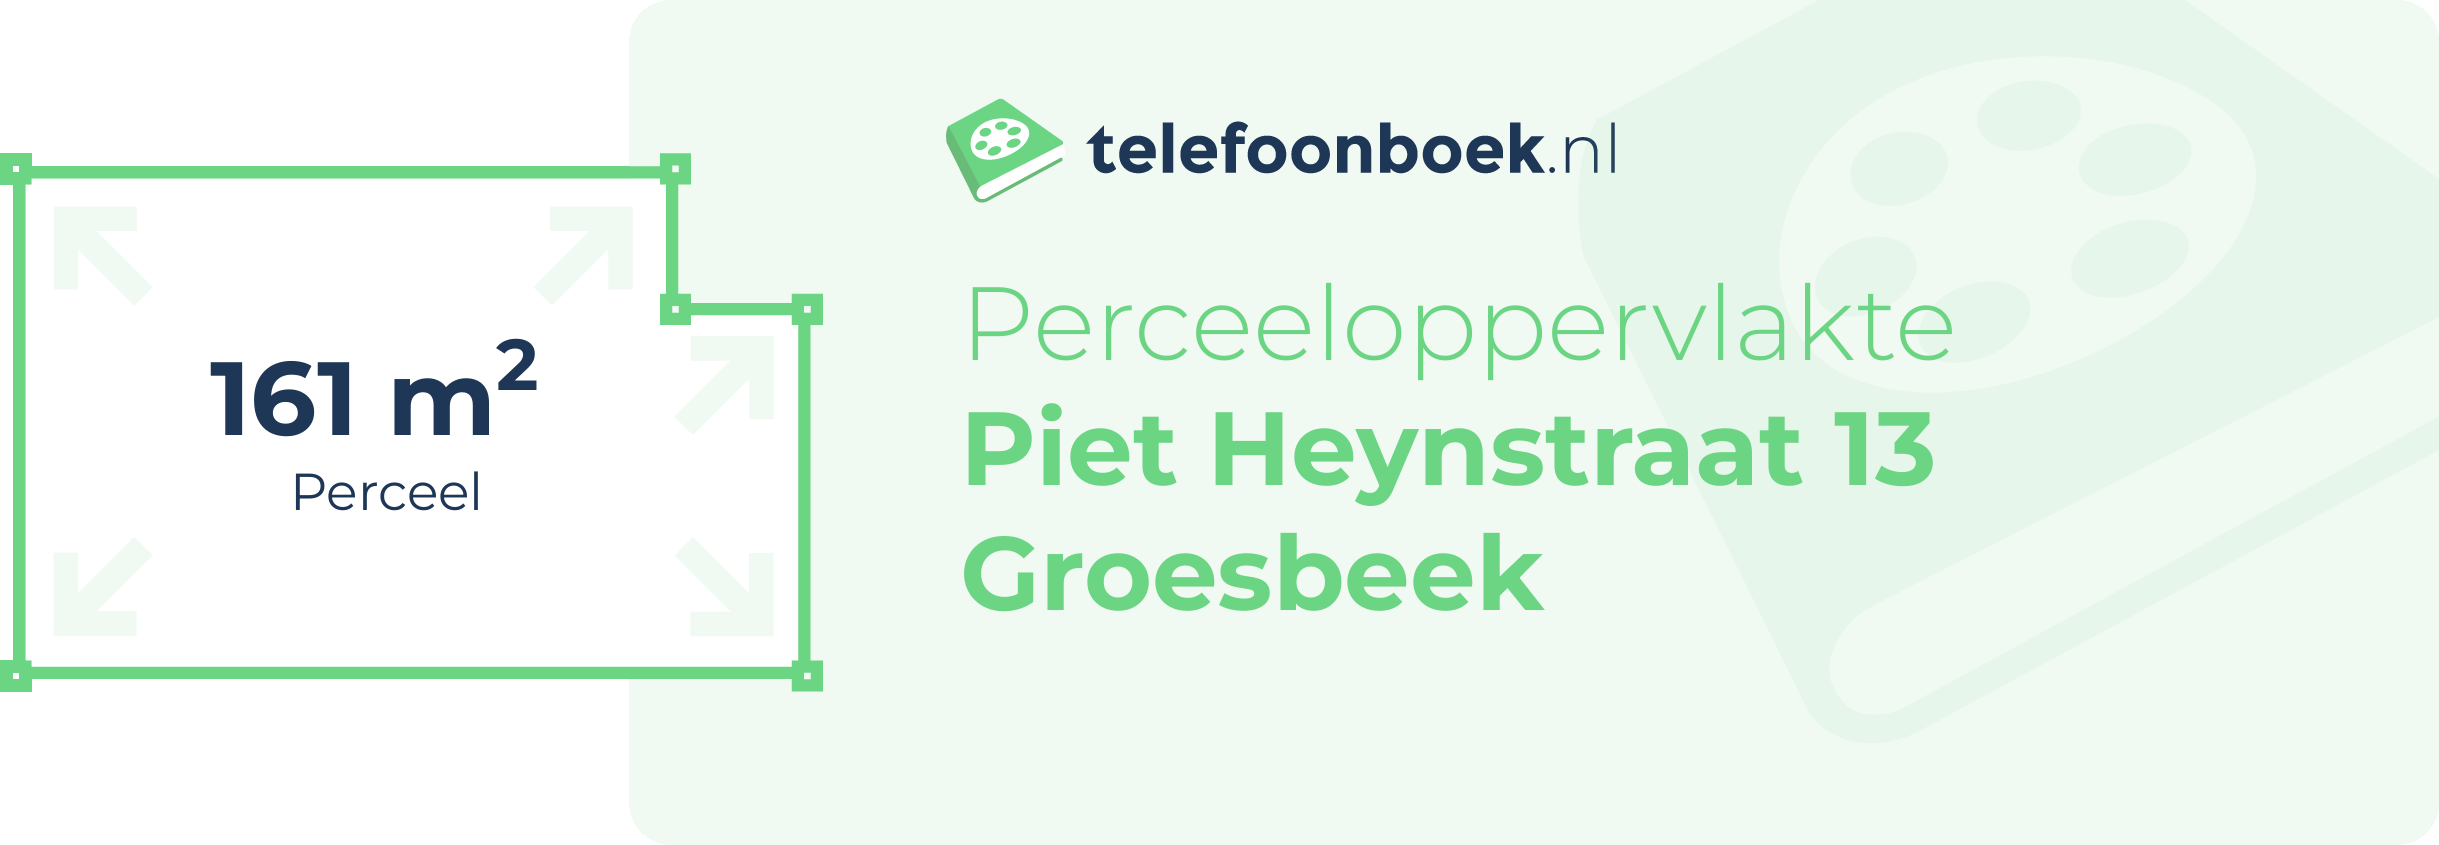 Perceeloppervlakte Piet Heynstraat 13 Groesbeek